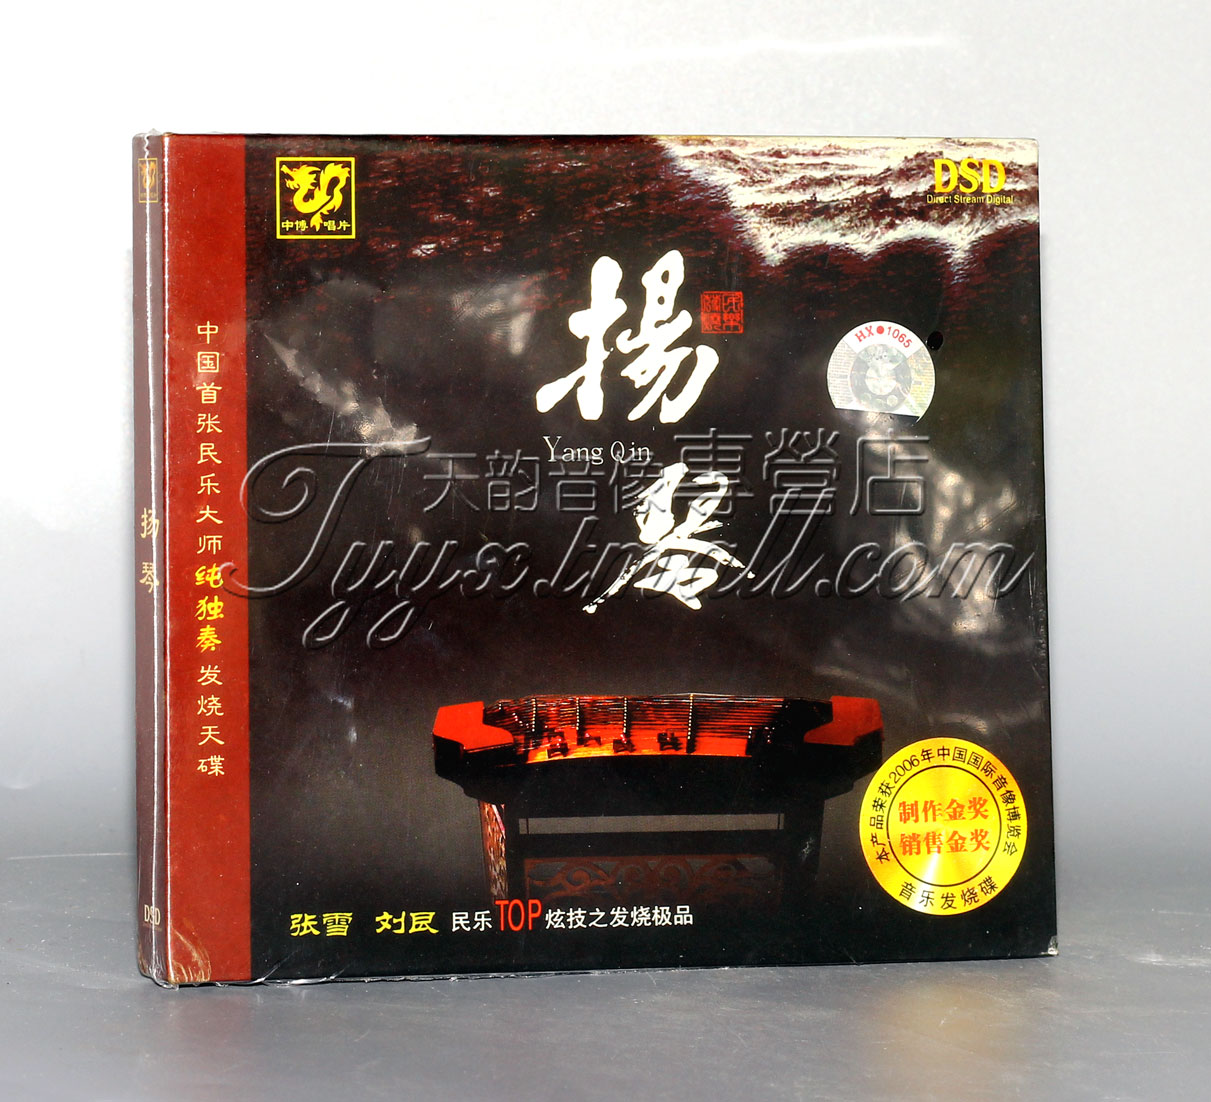 正版 中博唱片 中国民乐大师纯独奏发烧天碟 扬琴 DSD 1CD